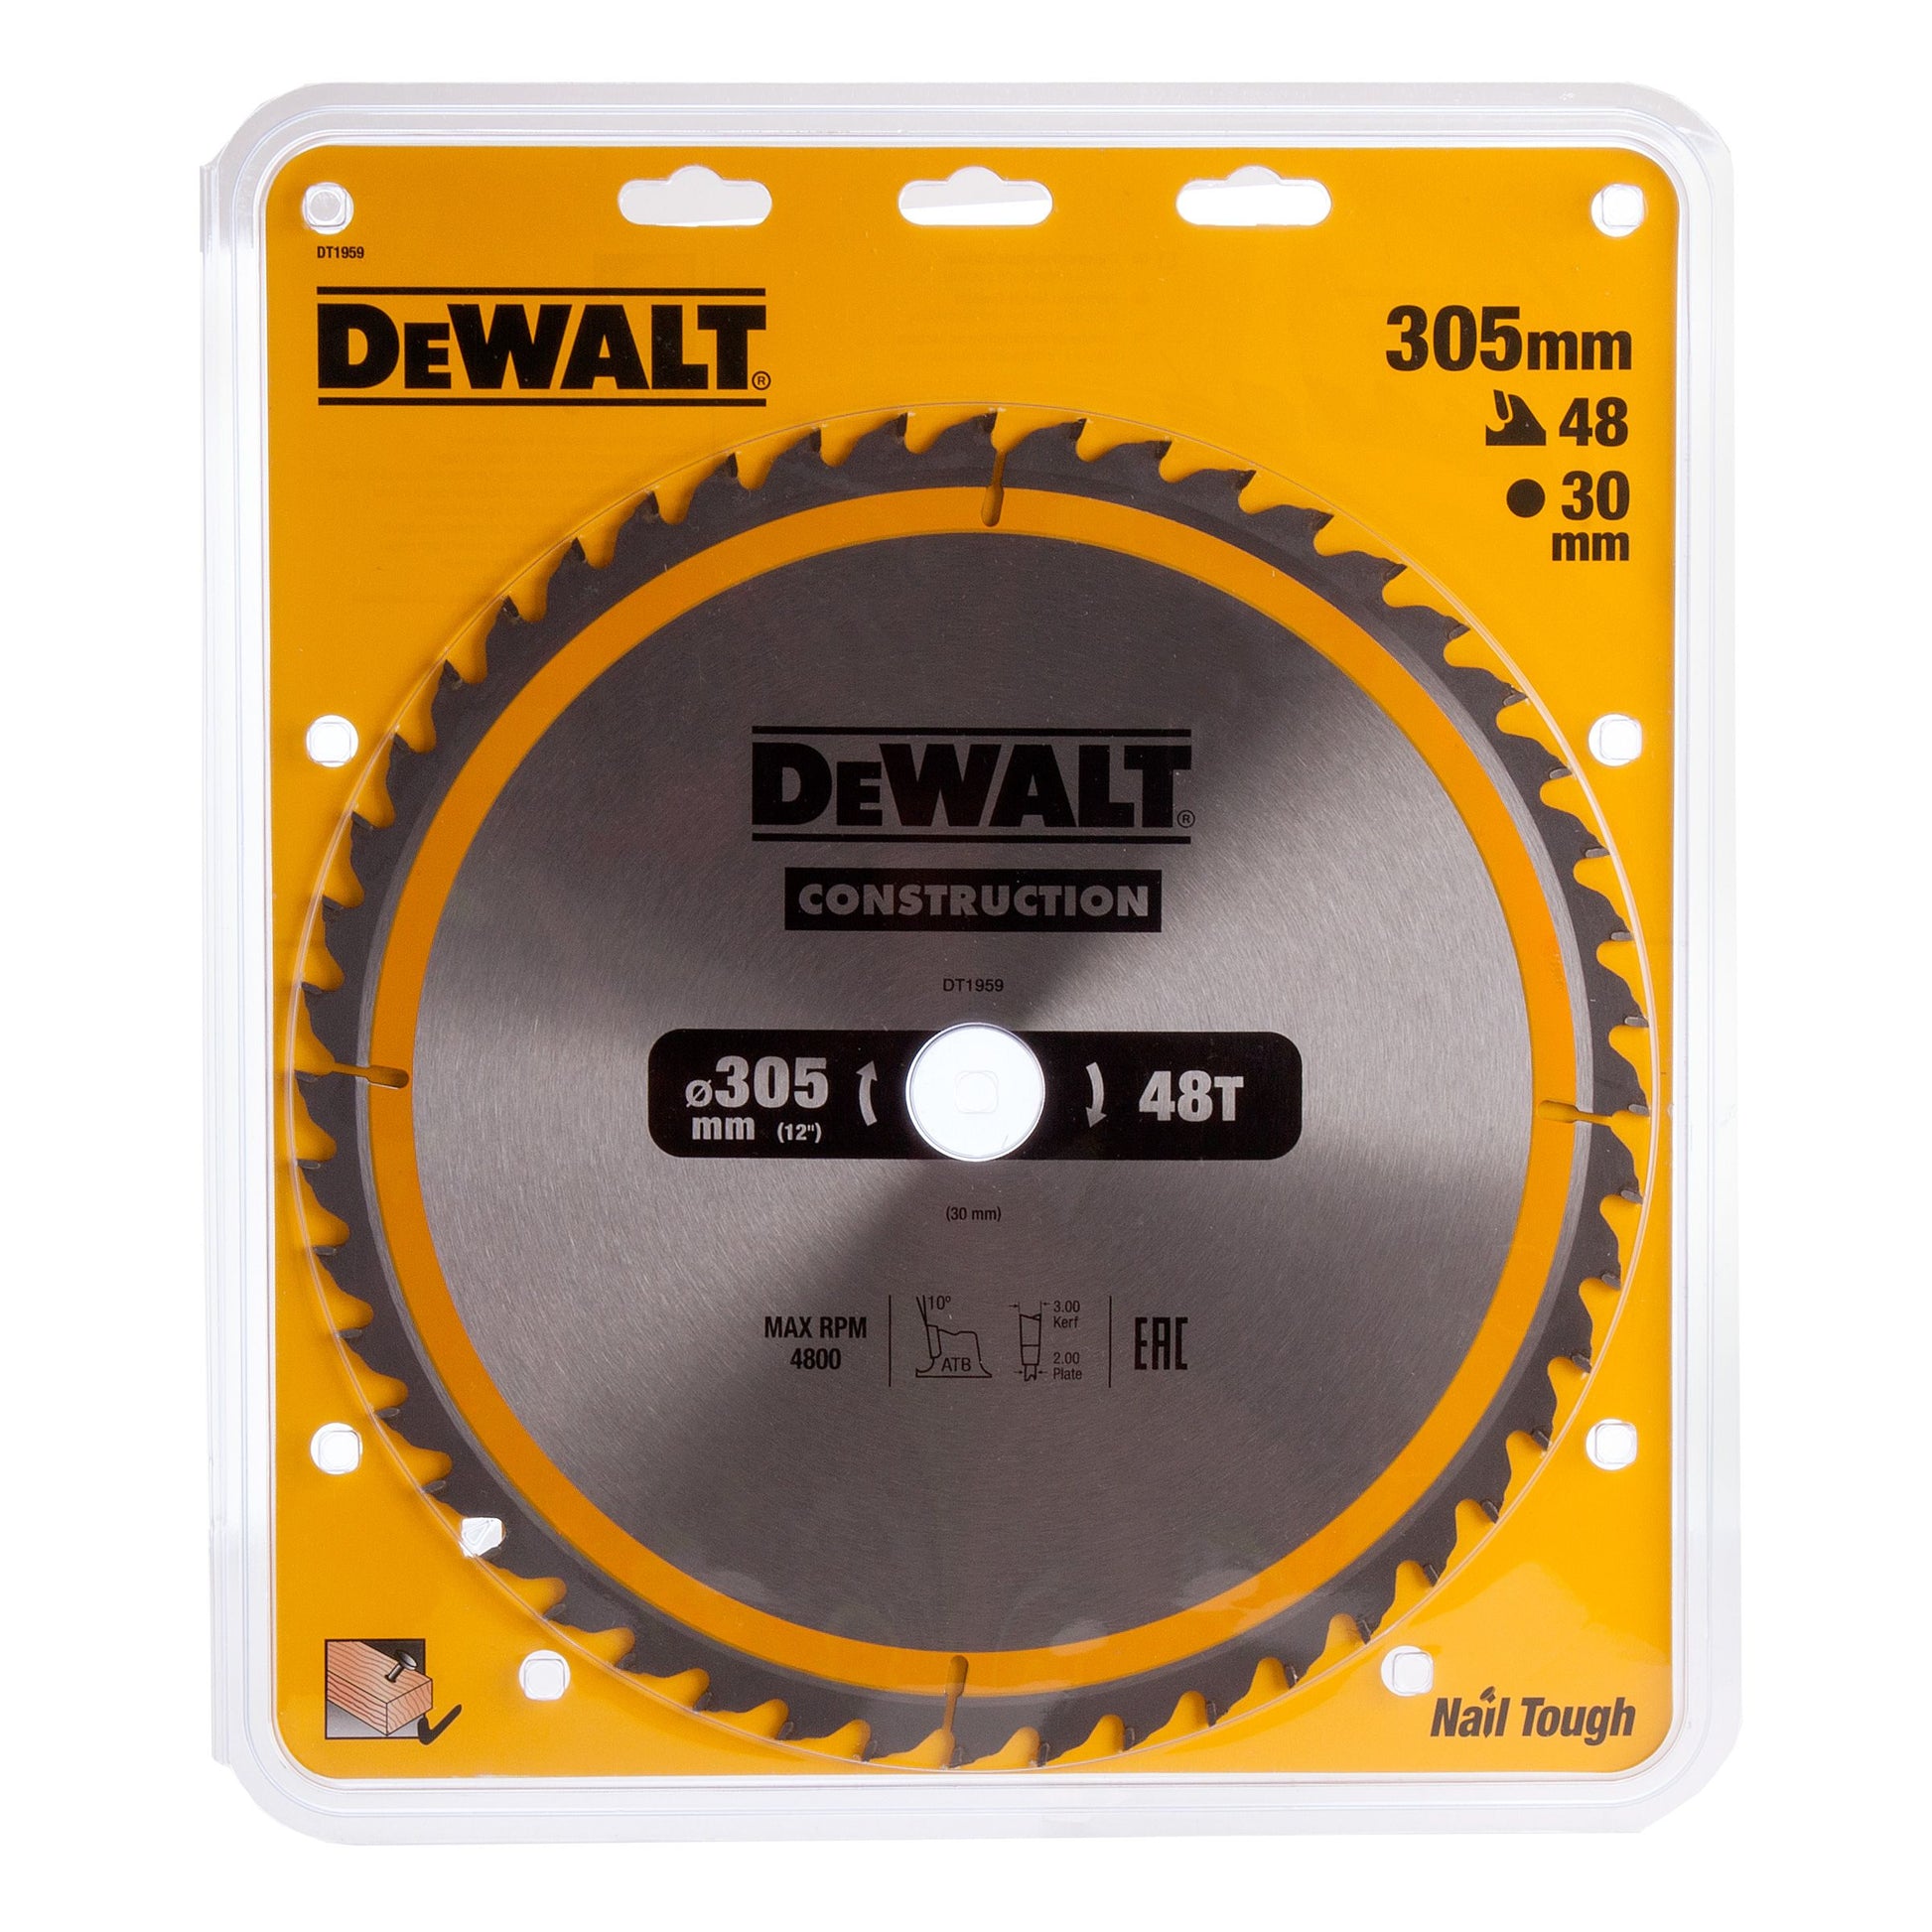 DEWALT DT1959-QZ CIRCULAR SAW BLADE CONSTRUCTION 305MM X 30MM X 48 TEETH